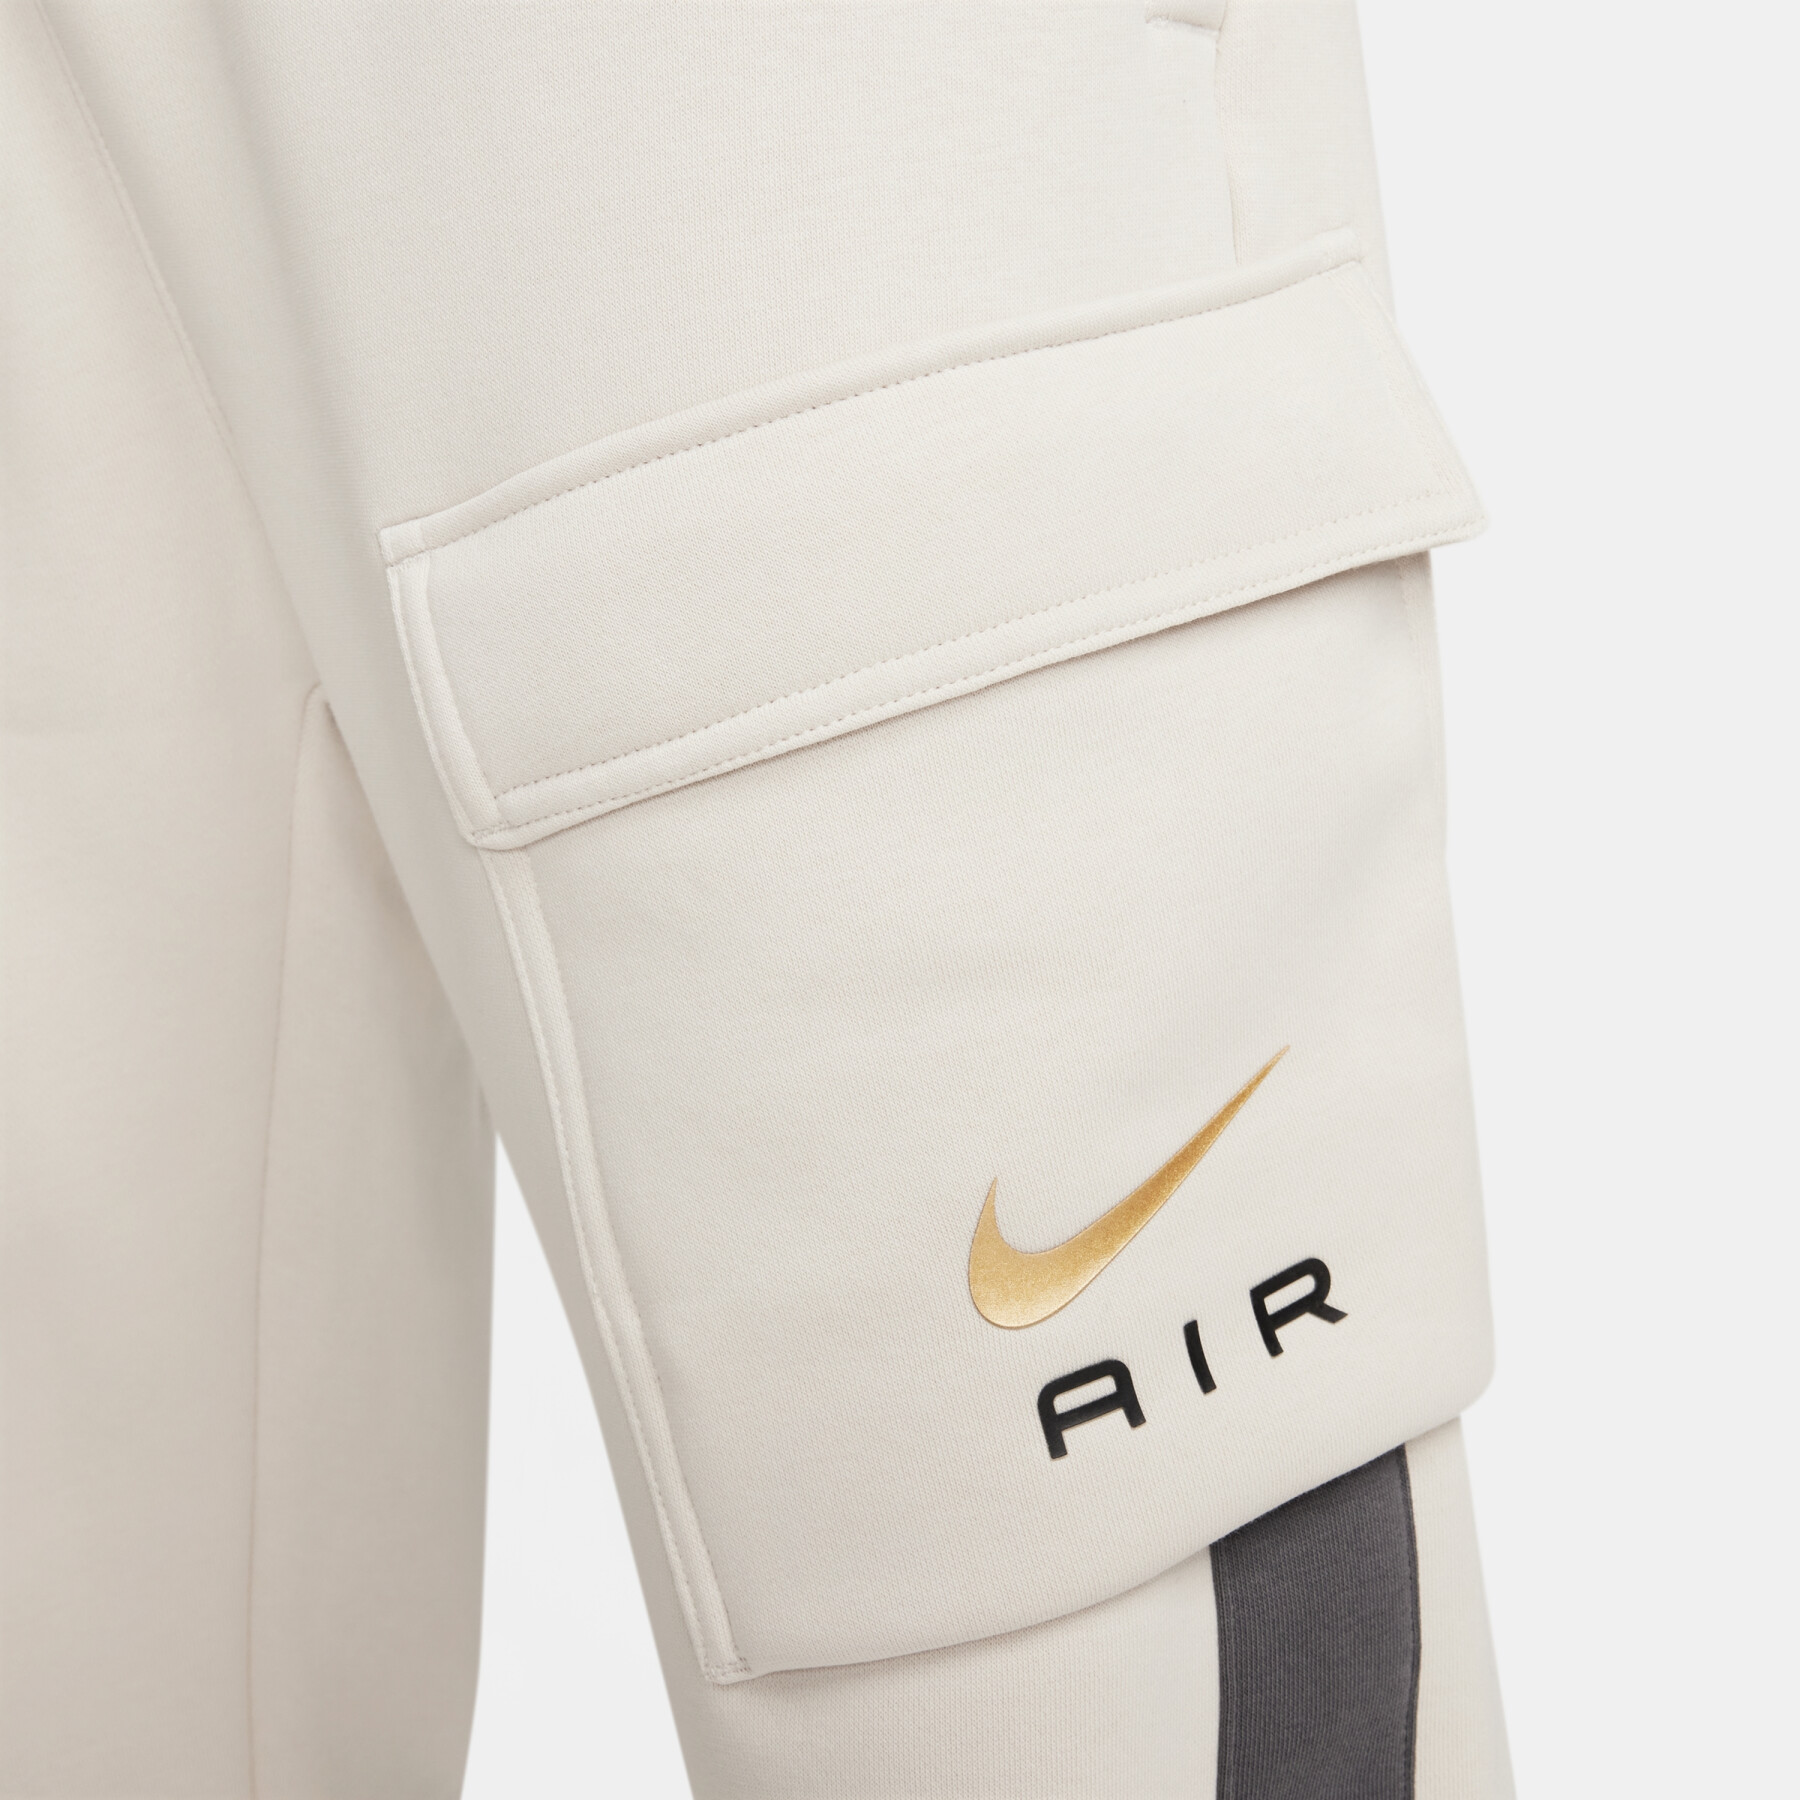 Pantalón de chándal cargo Nike Air